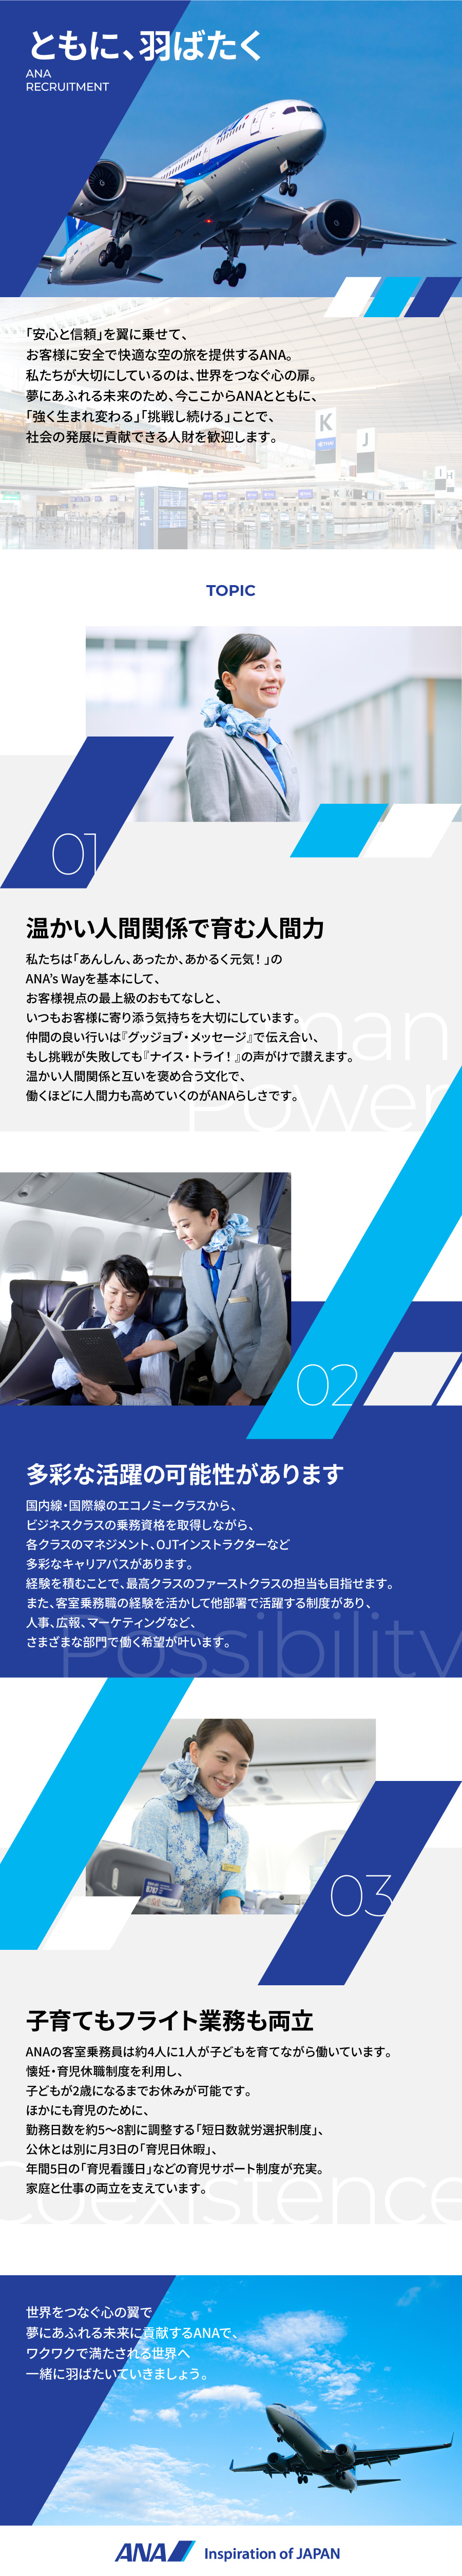 全日本空輸株式会社からのメッセージ